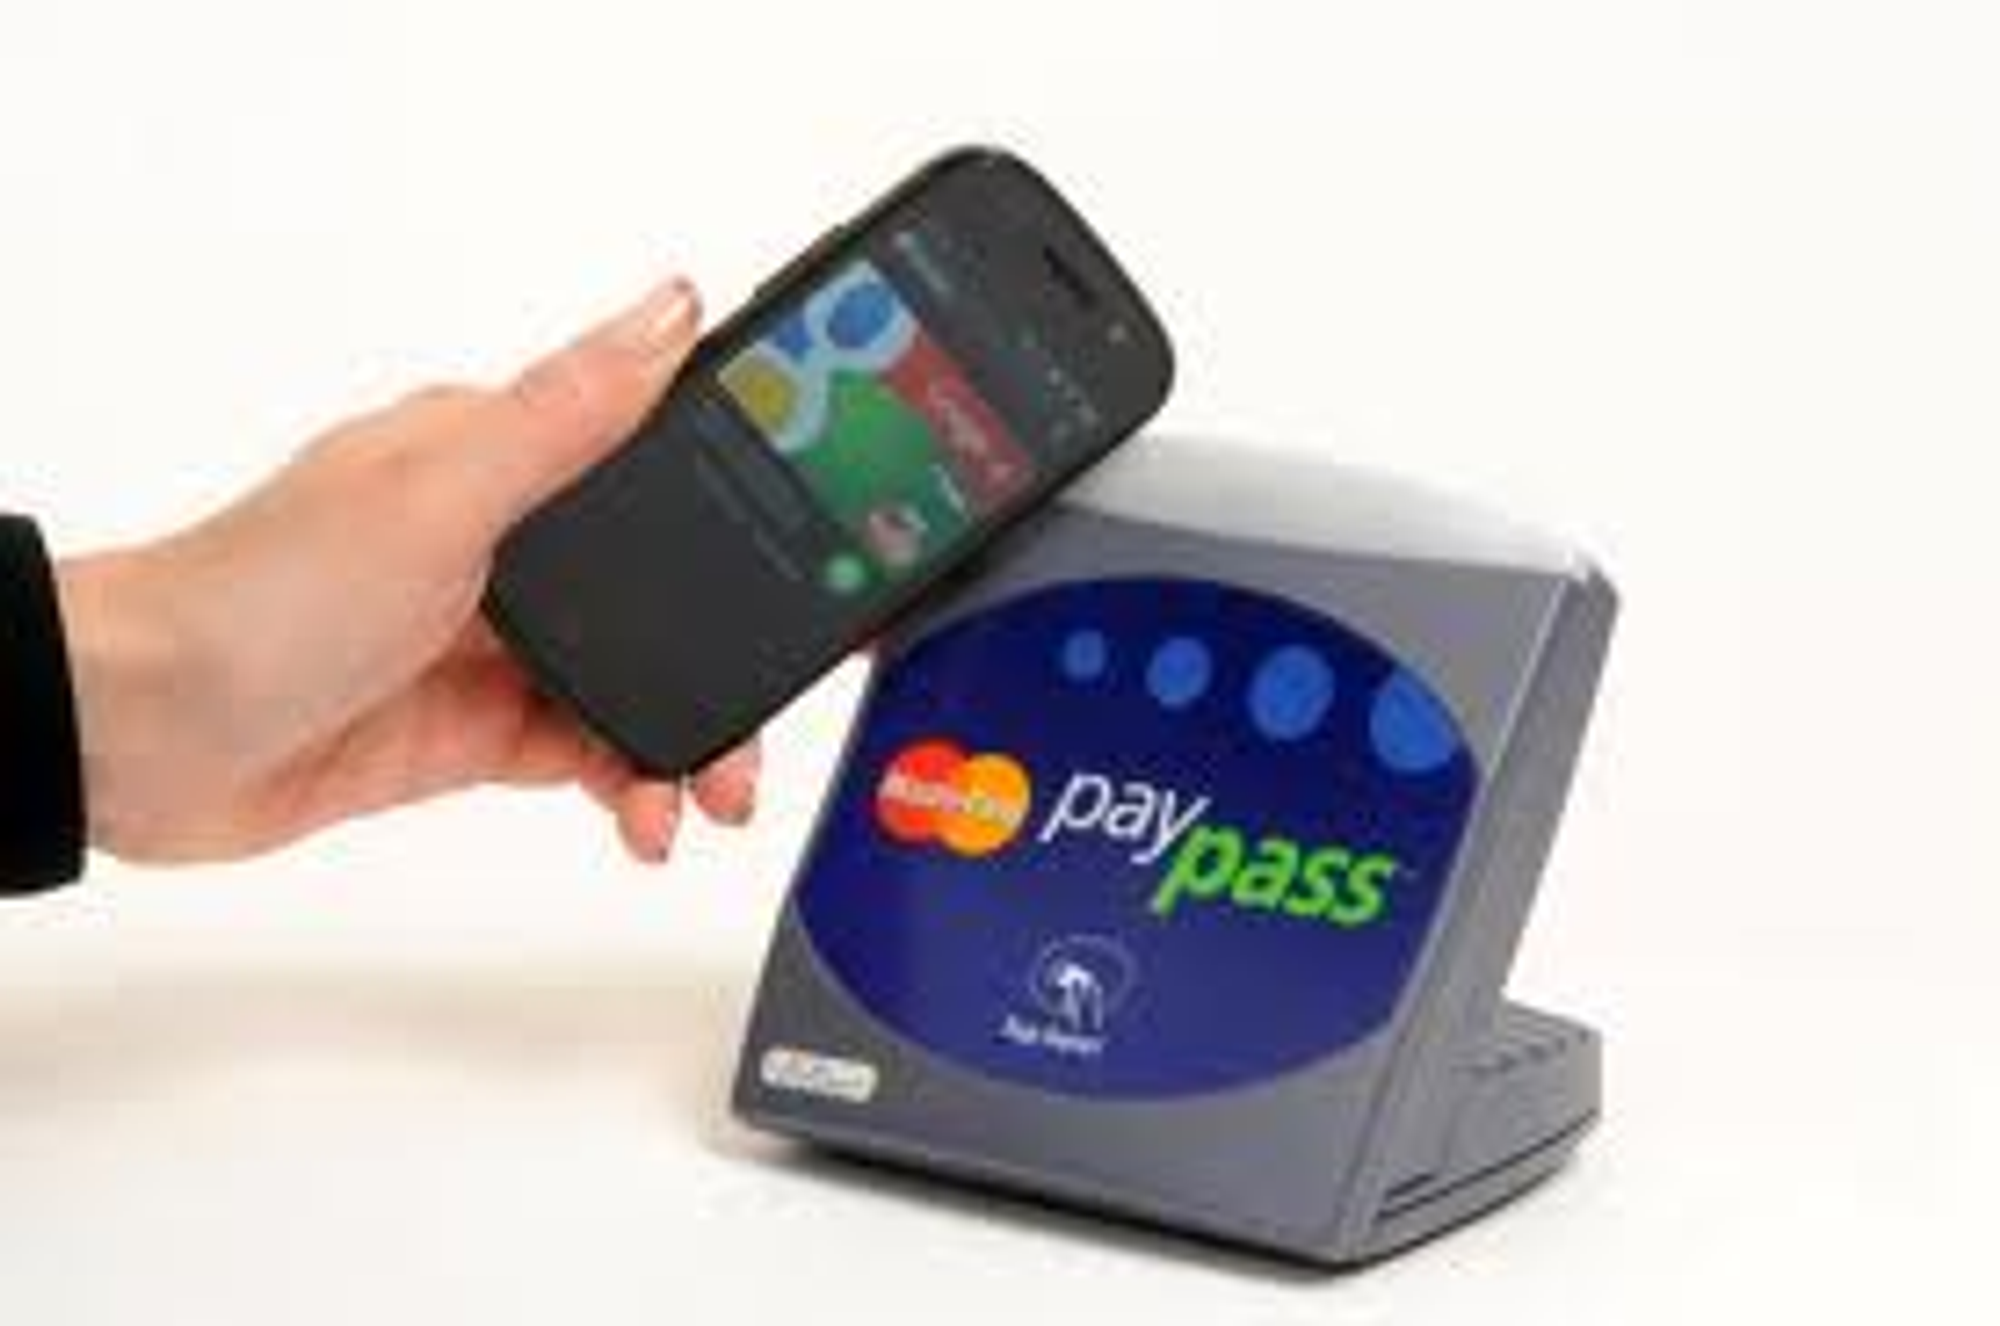 Google Wallet bruker NFC: Du laster ned en app og oppretter en konto med navn, passord og kredittkortnummer. Når du skal betale sveiper du mobilen over butikkens NFC-terminal. Betalingsdata overføres direkte fra NFC-terminalen til banken.